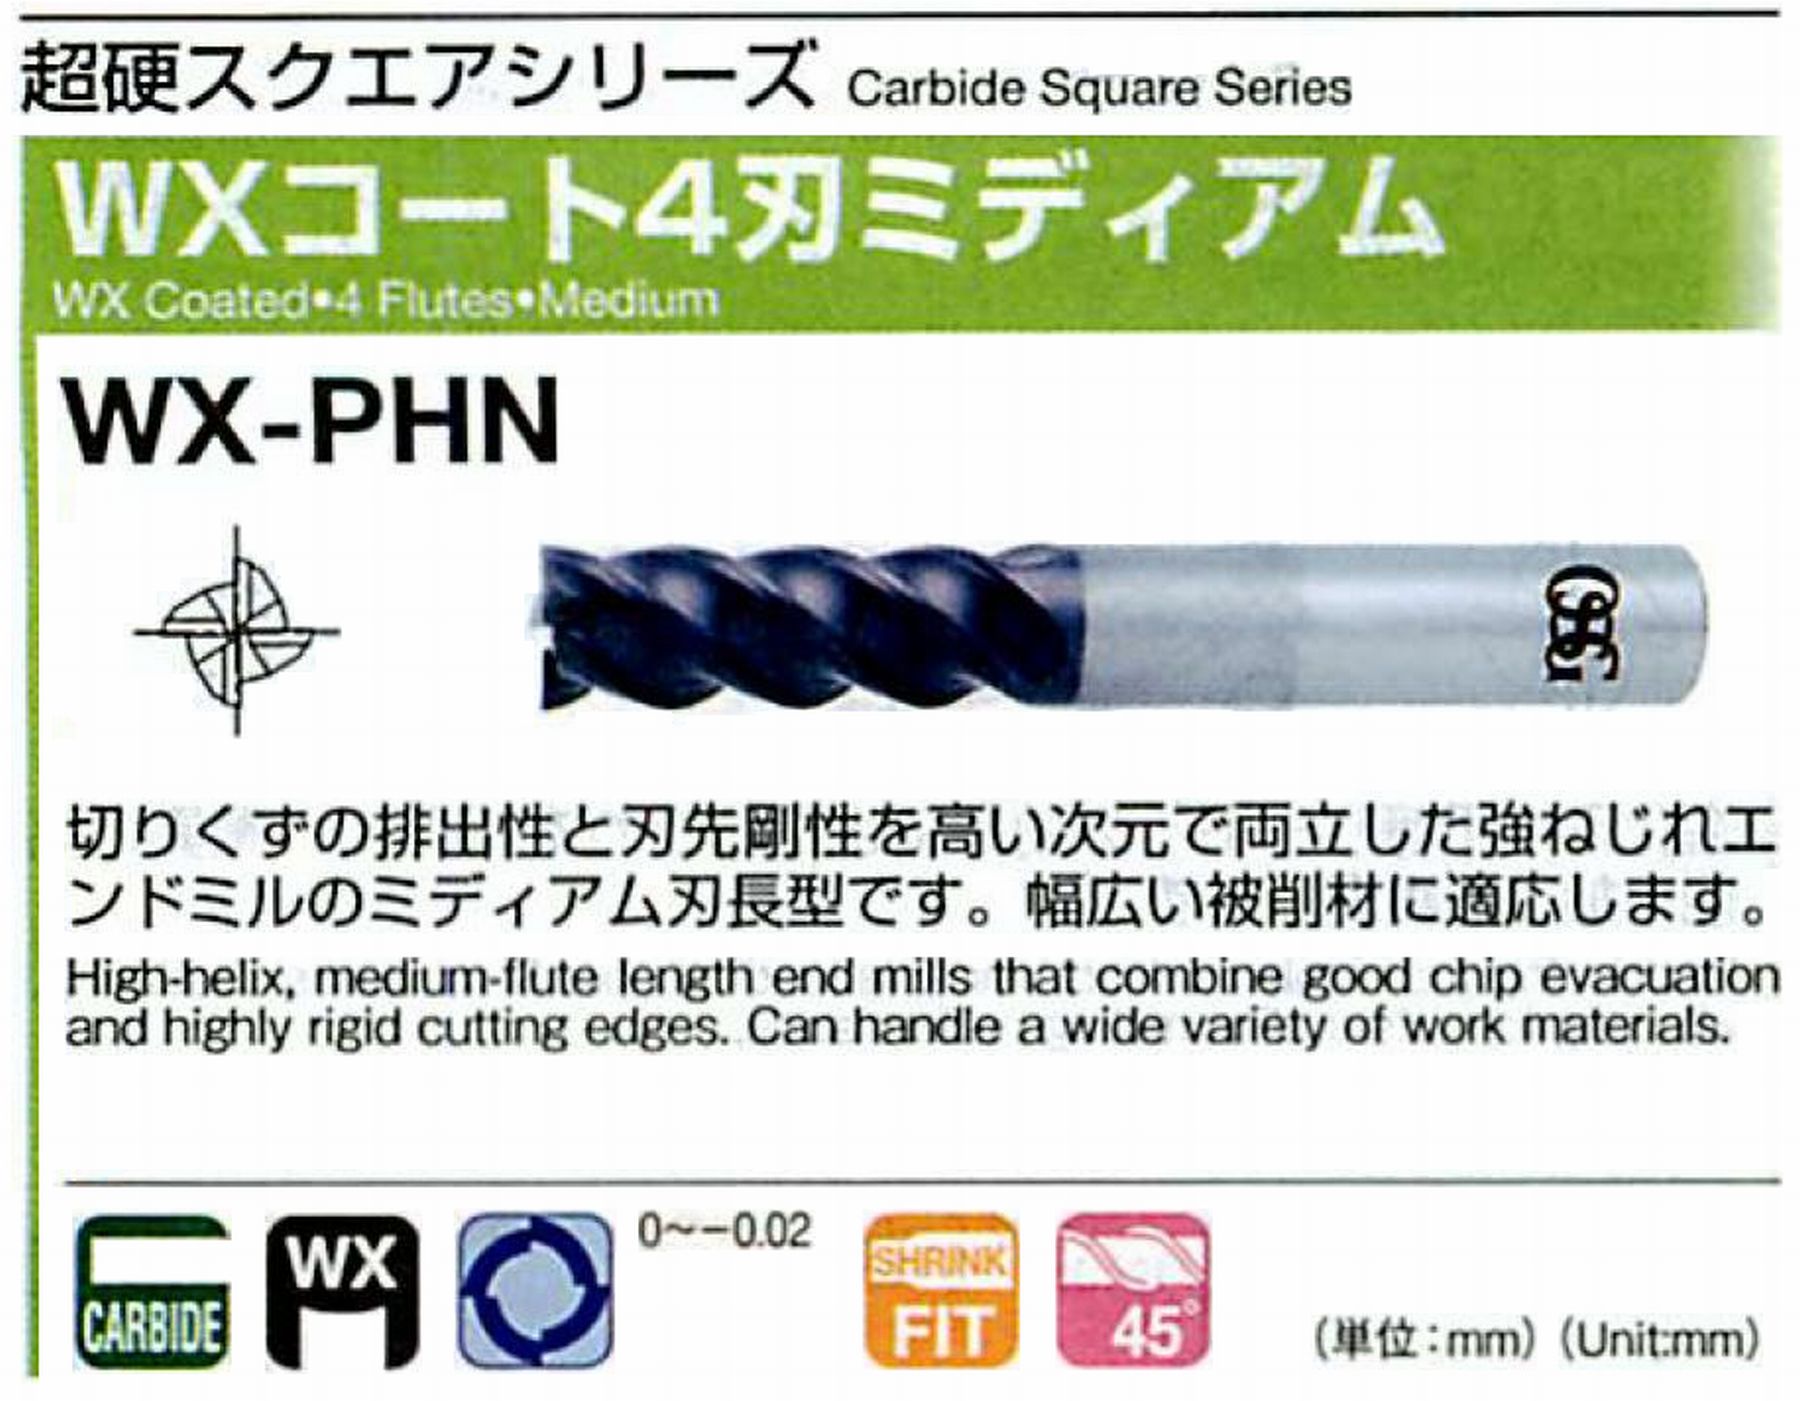 オーエスジー/OSG WXコート 4刃ミディアム WX-PHN 外径3 全長60 刃長10 シャンク径6mm